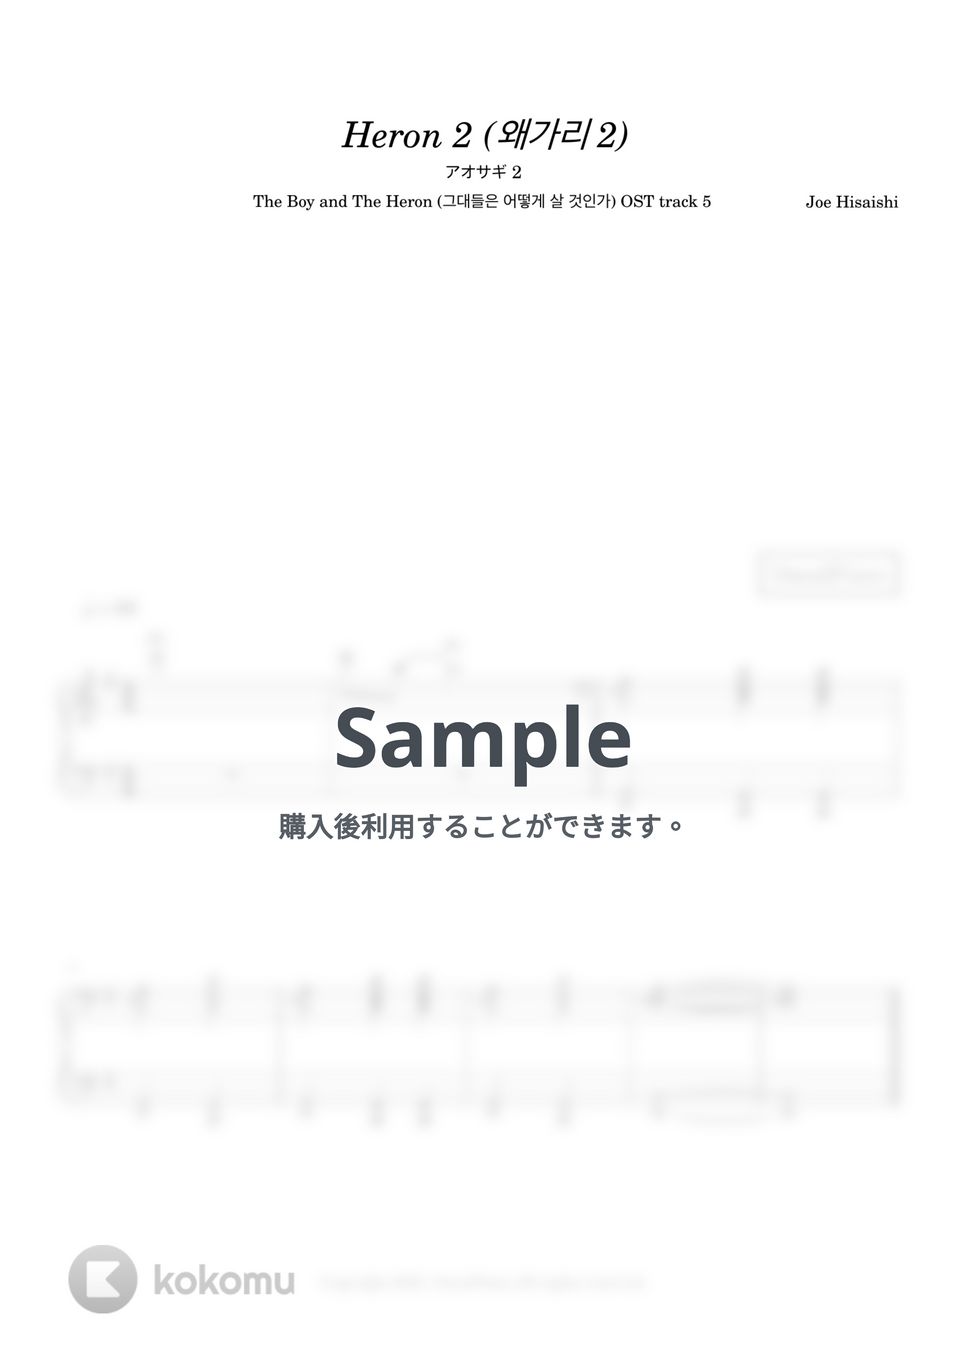 久石譲 - 青サギ II (君たちはどう生きるか OST track 5) by 今日ピアノ(Oneul Piano)